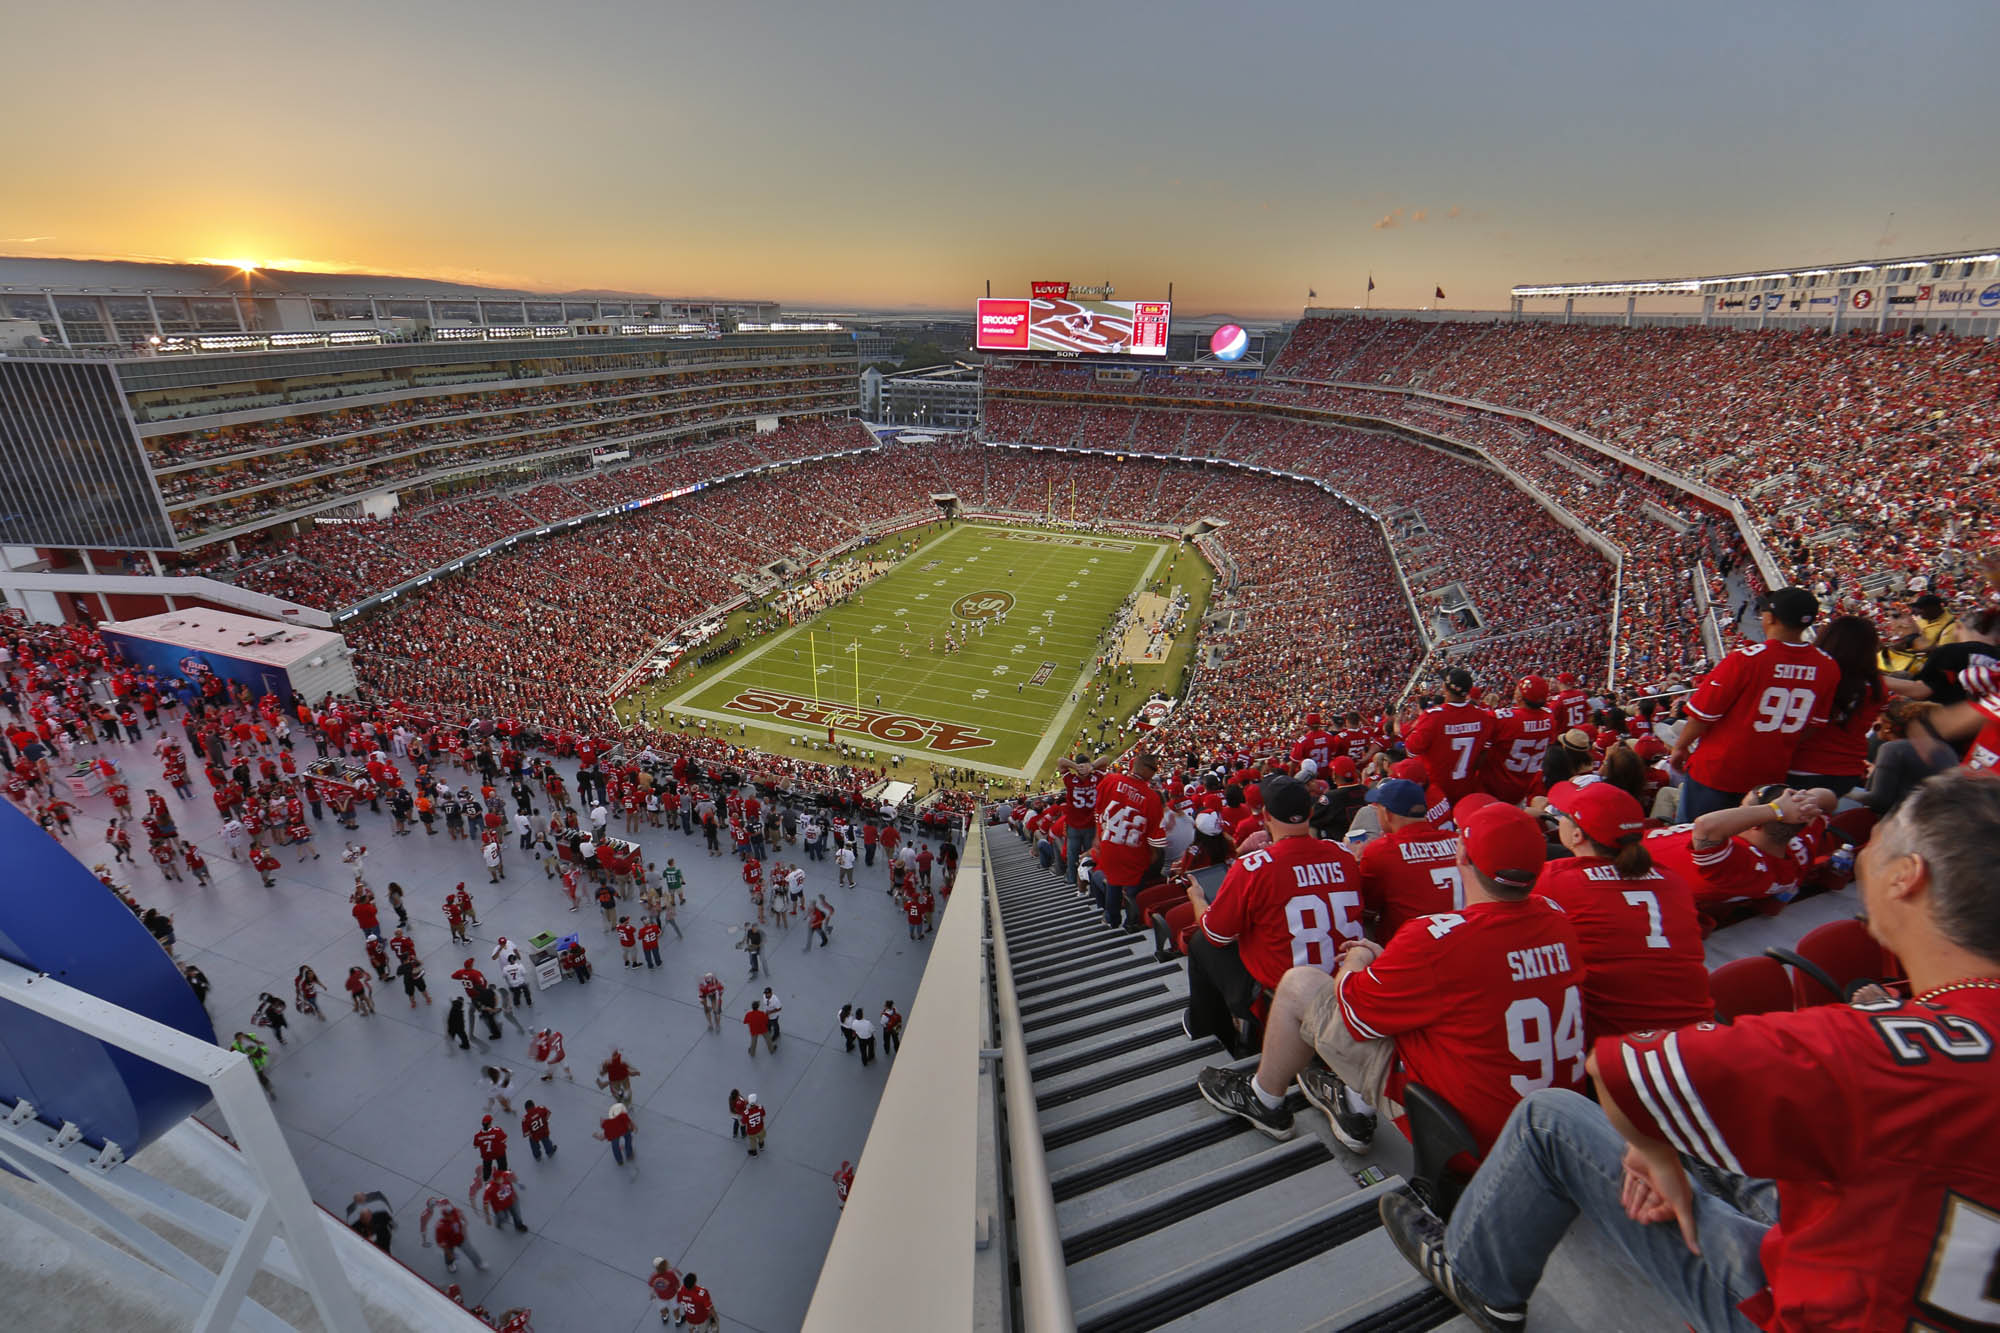 San Francisco 49ers Stadium - Levi's Stadium (Home of Super Bowl 50)